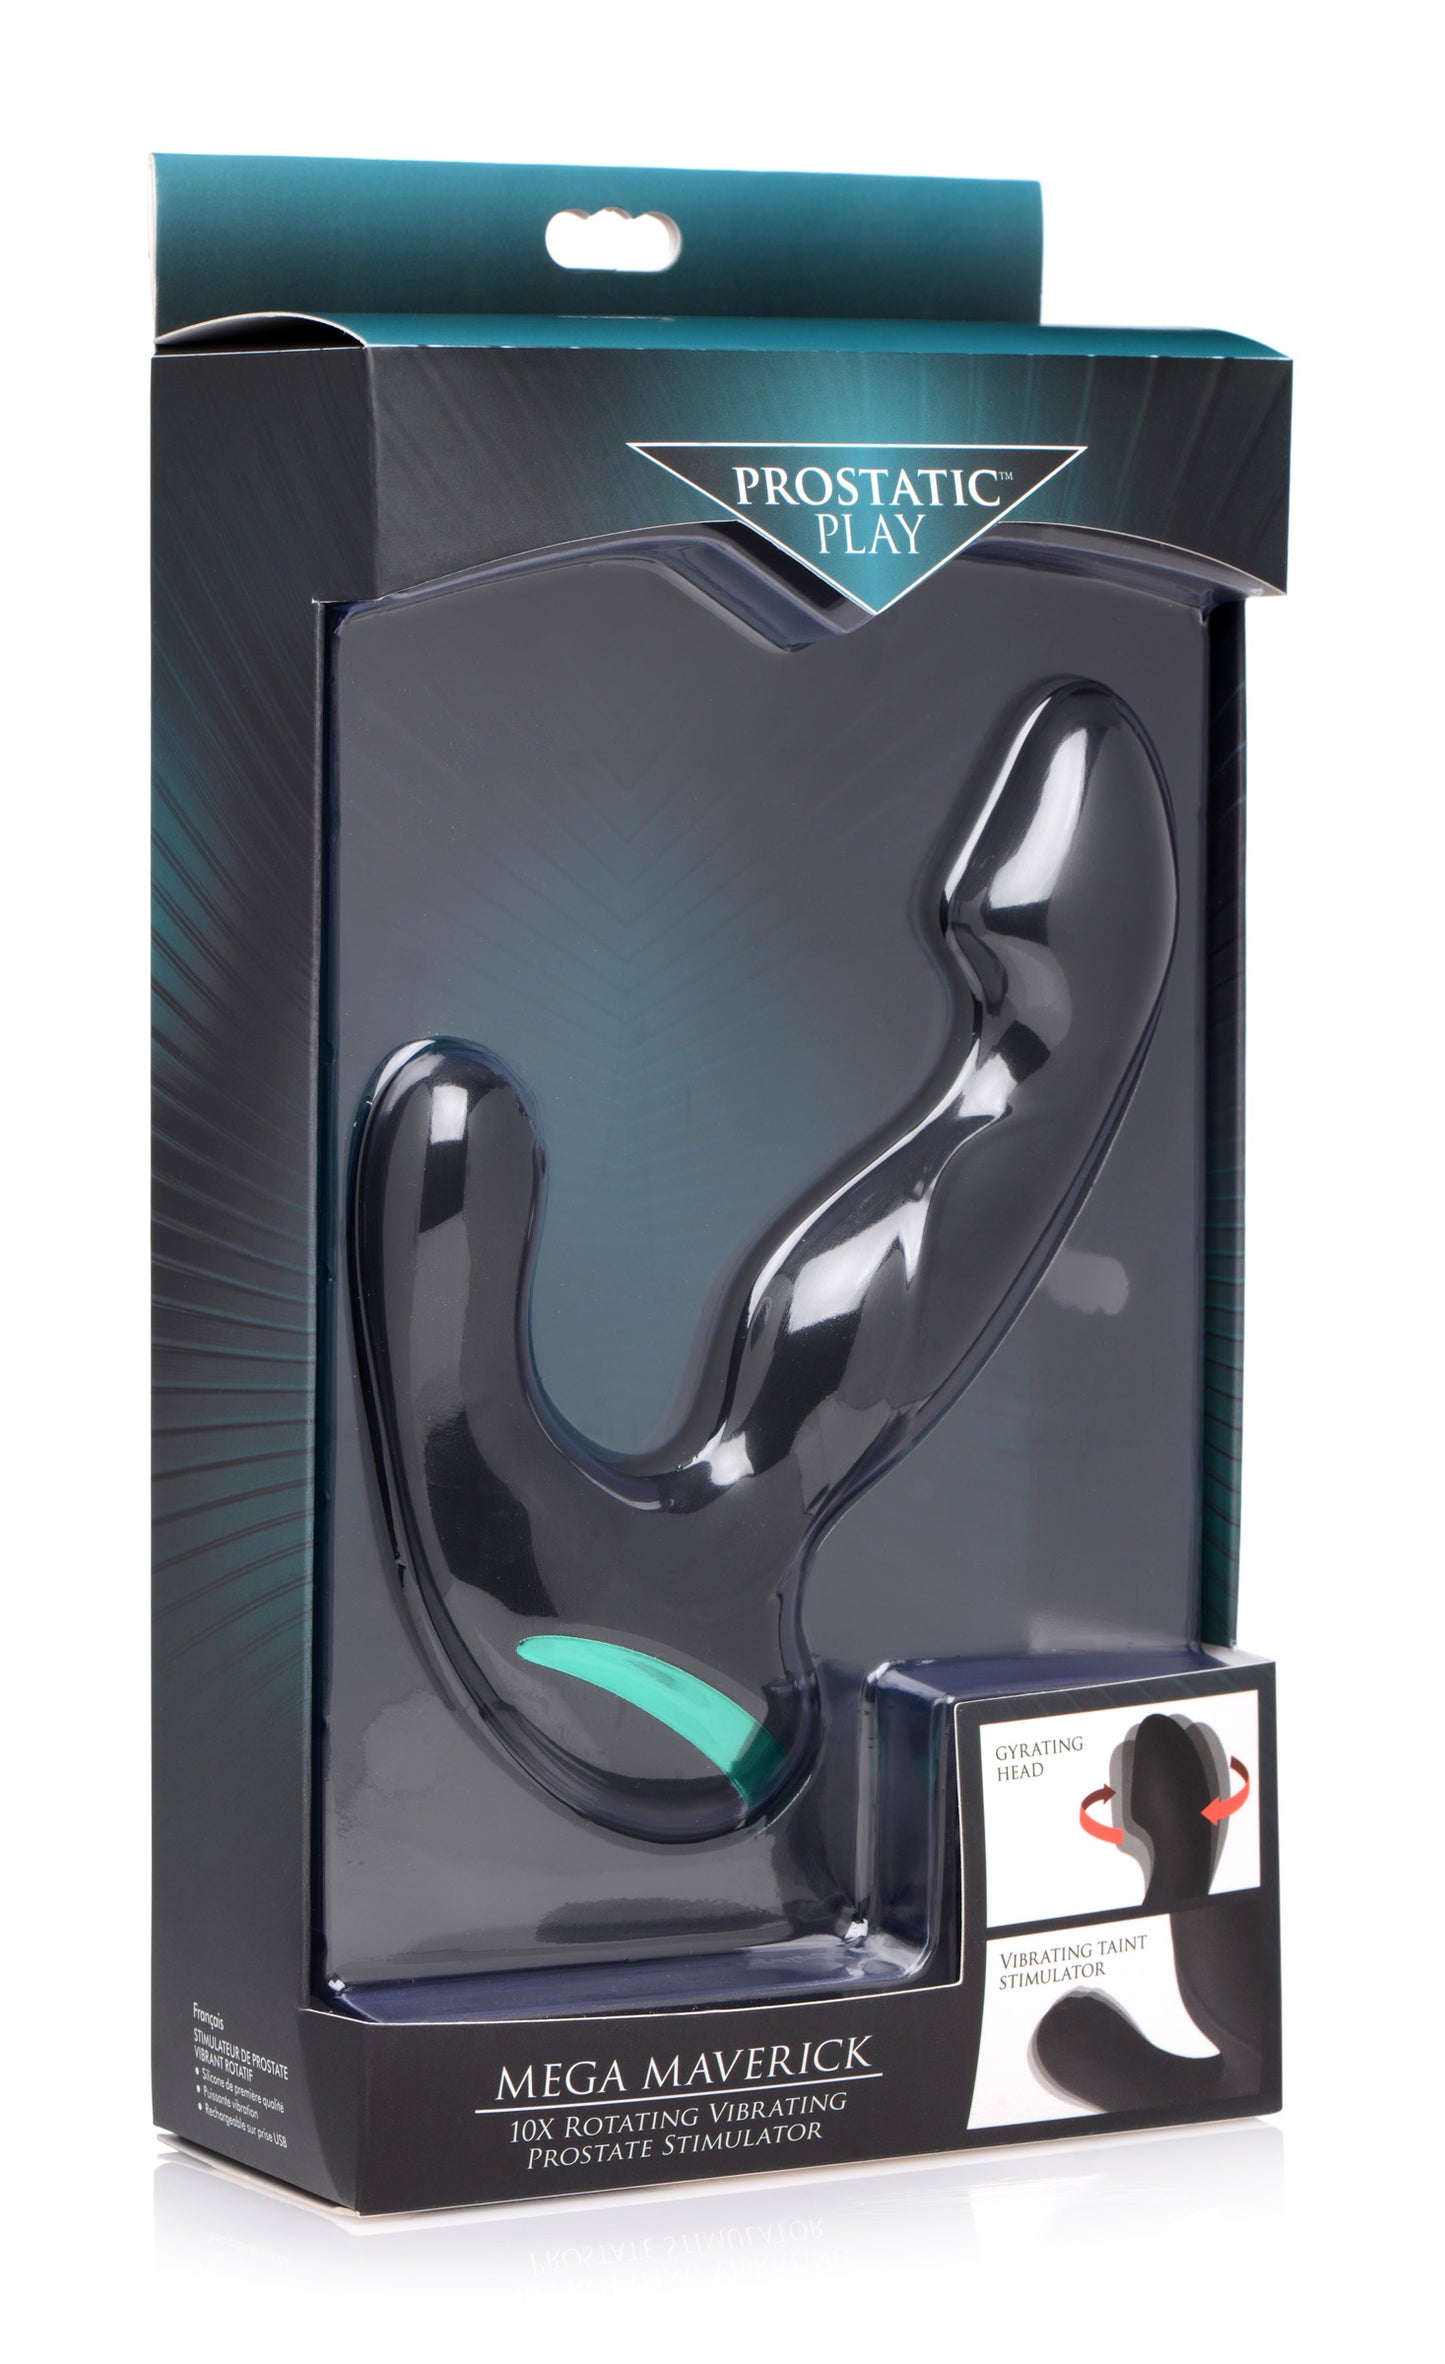 Mega Maverick 10x Rotating Vibrating Prostate Stimulator